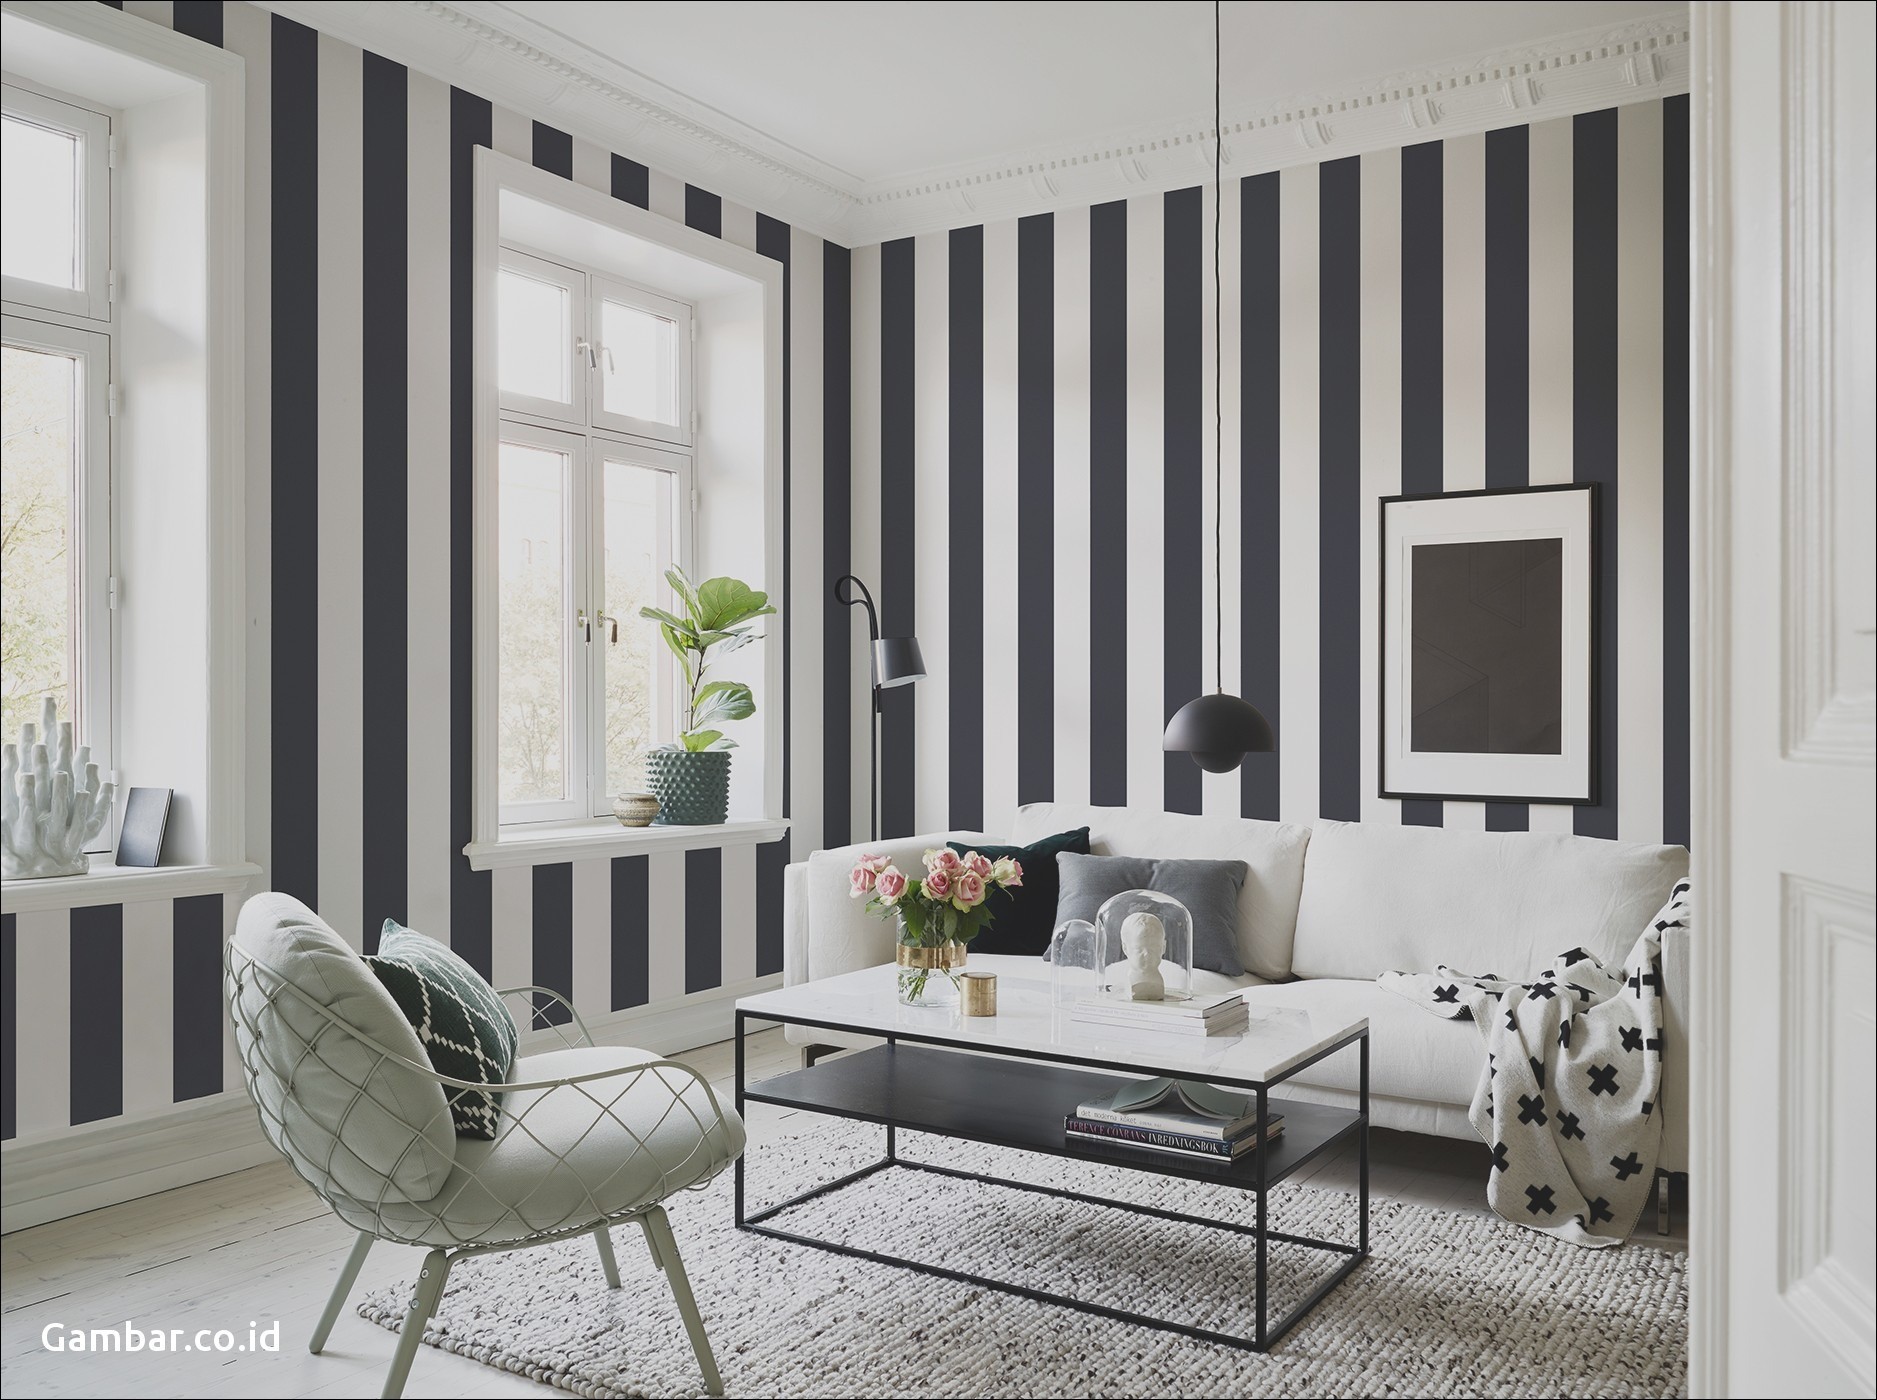 Gambar Ruang Tamu Rumah Minimalis Download Gambar Wallpaper - Living Rooms Bricks Design , HD Wallpaper & Backgrounds